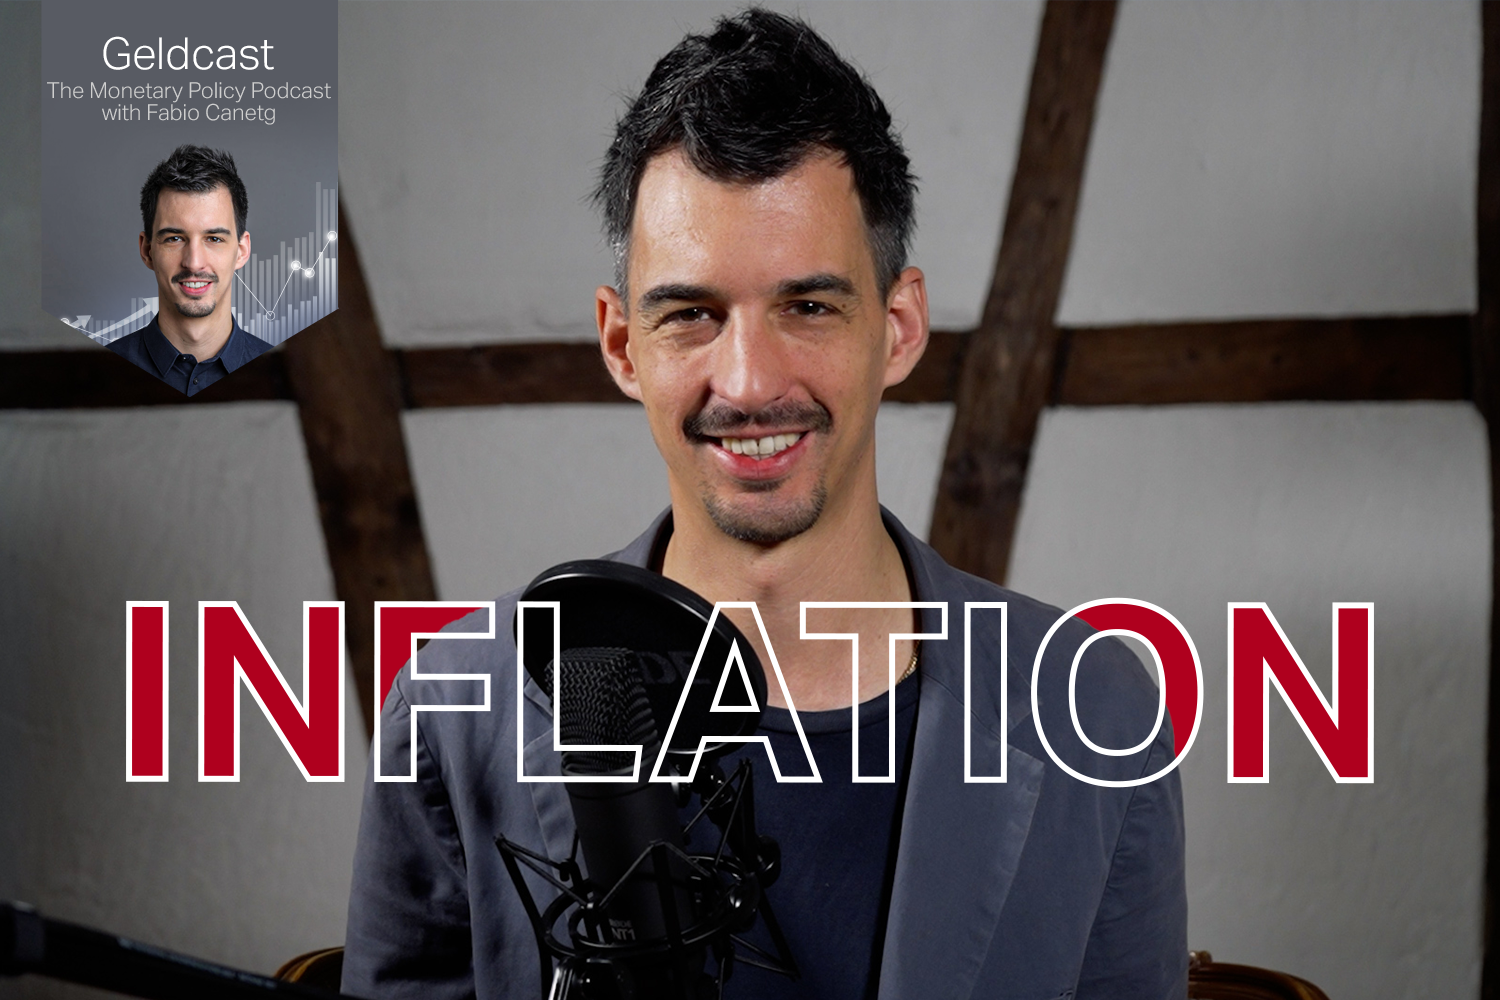 Fabio Canetg talks about inflation in Switzerland